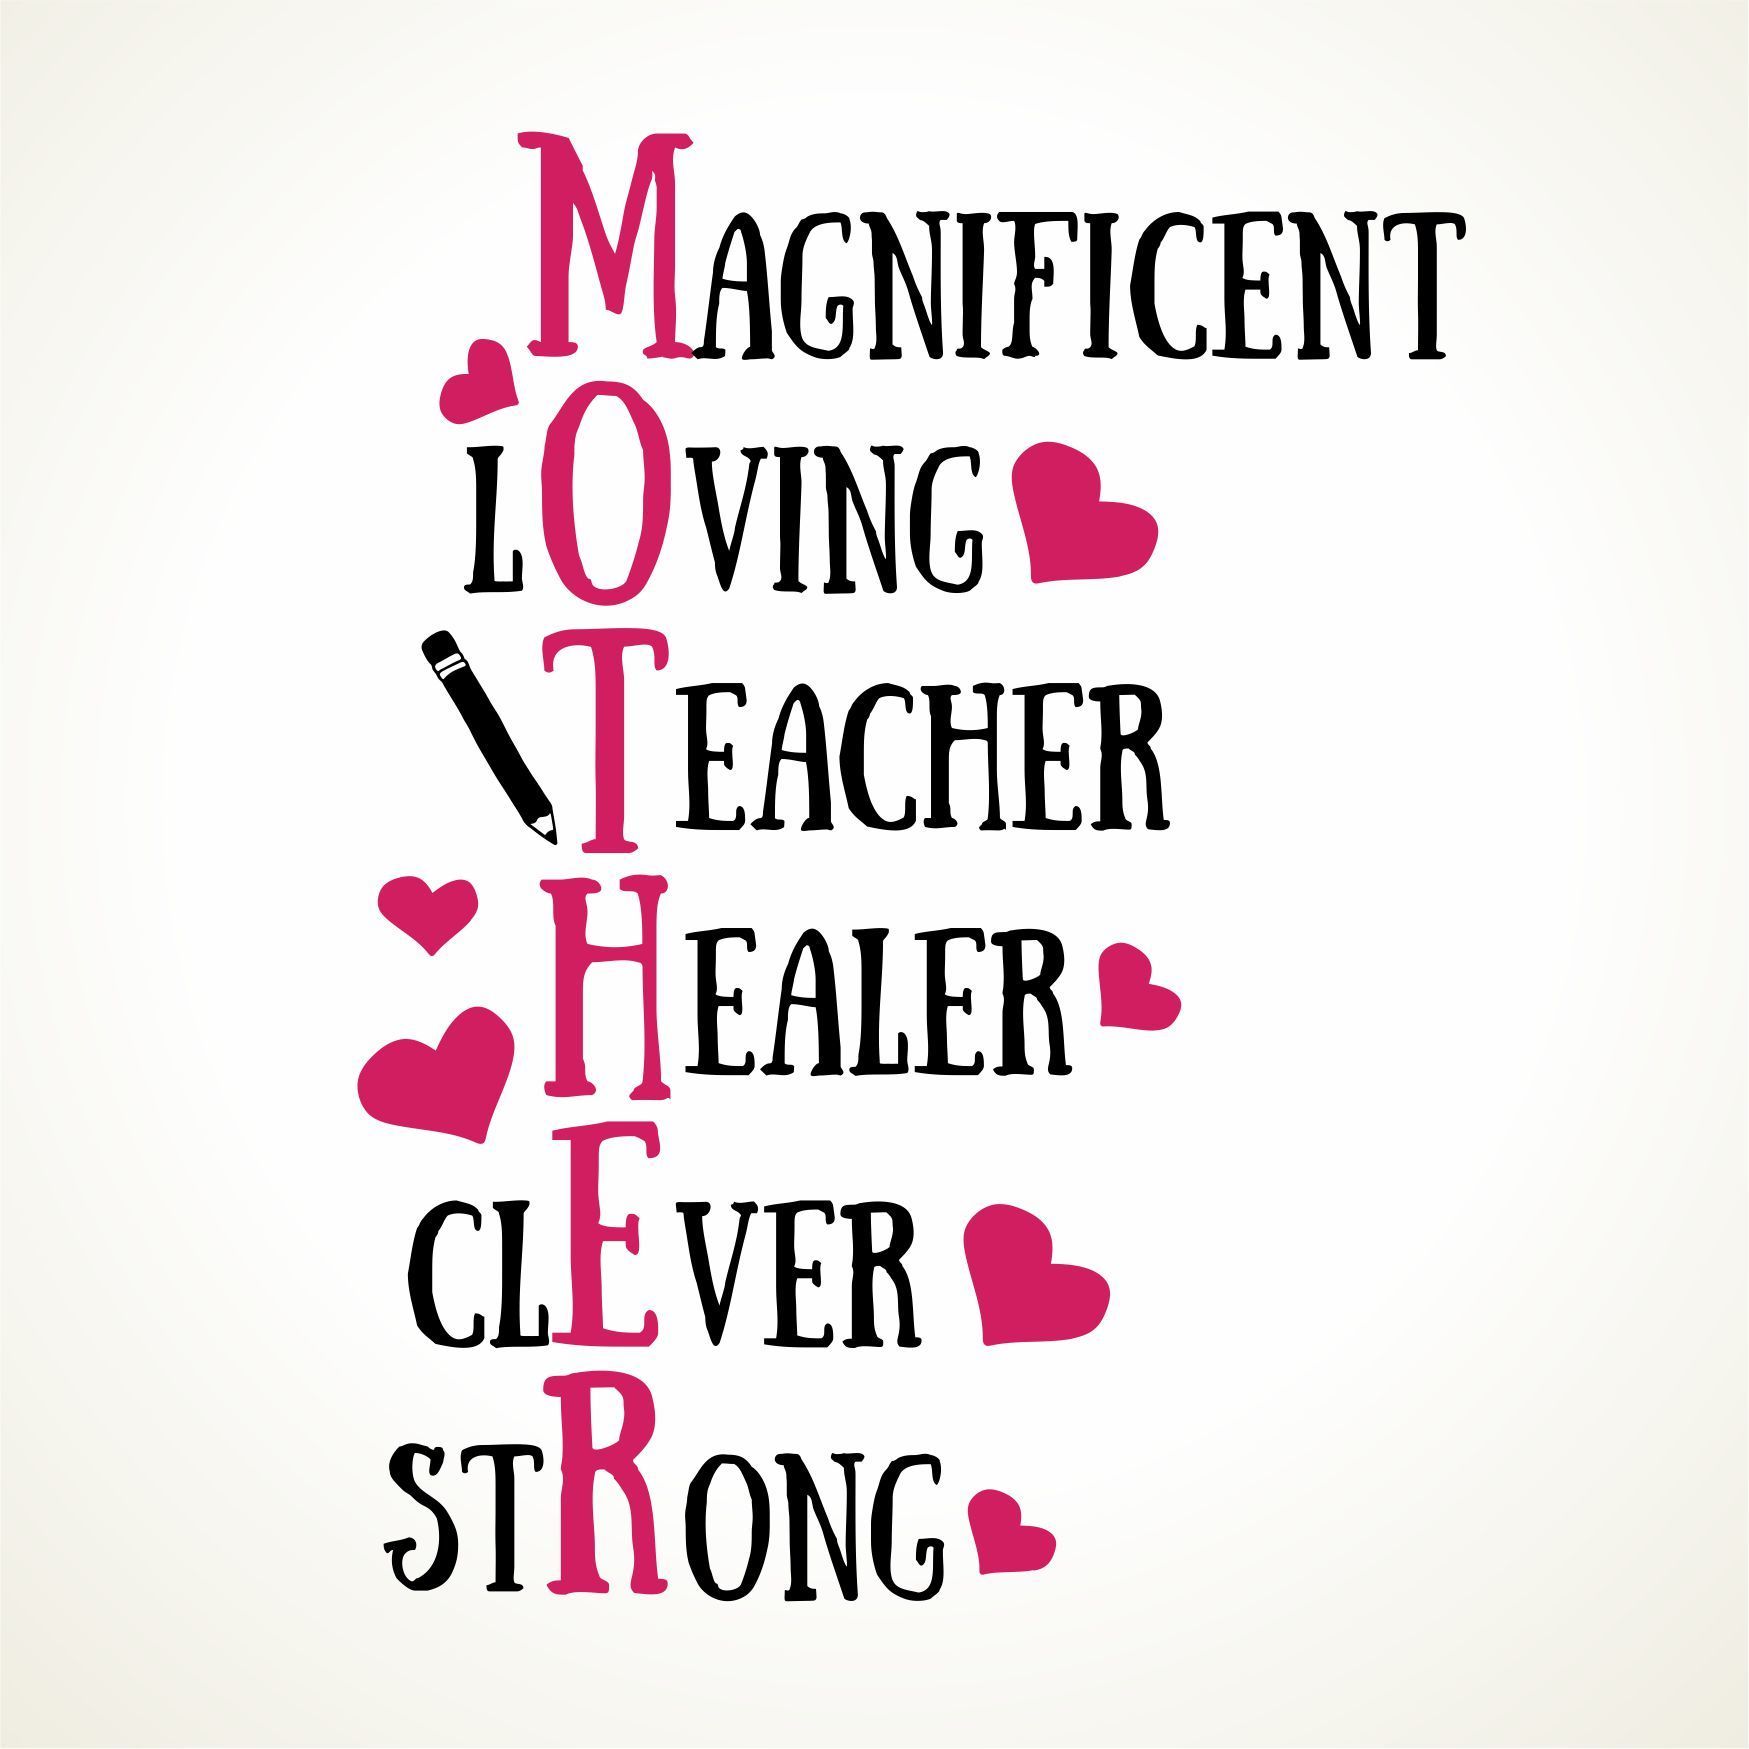 Moederdag tegeltje mother magnificent loving teacher healer clever strong